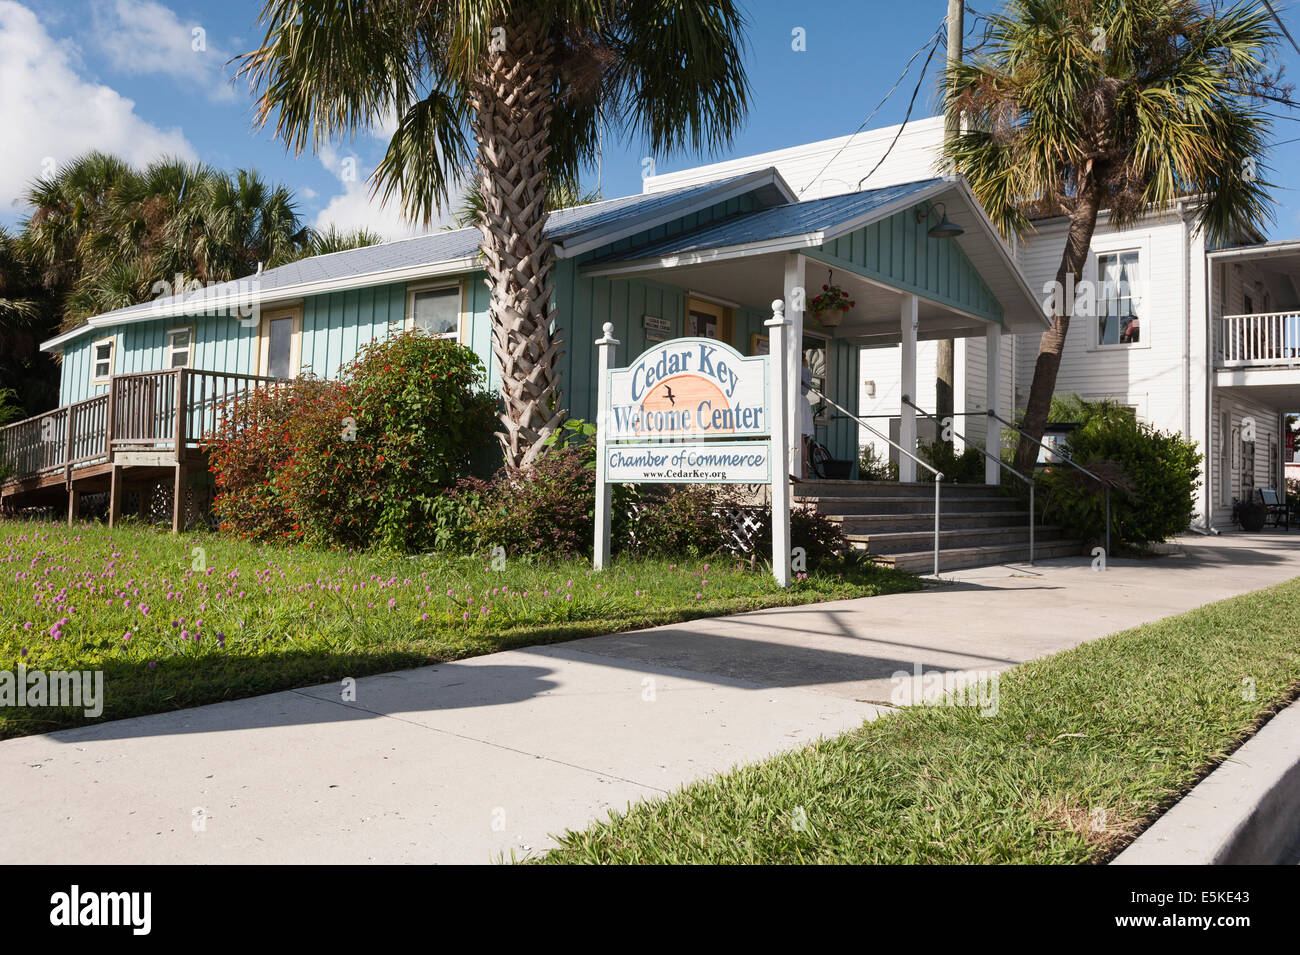 Cedar Key Florida Scenic Gulf Coast Welcome Center Scenic Gulf Coast City Streets Landscape Architecture Stock Photo